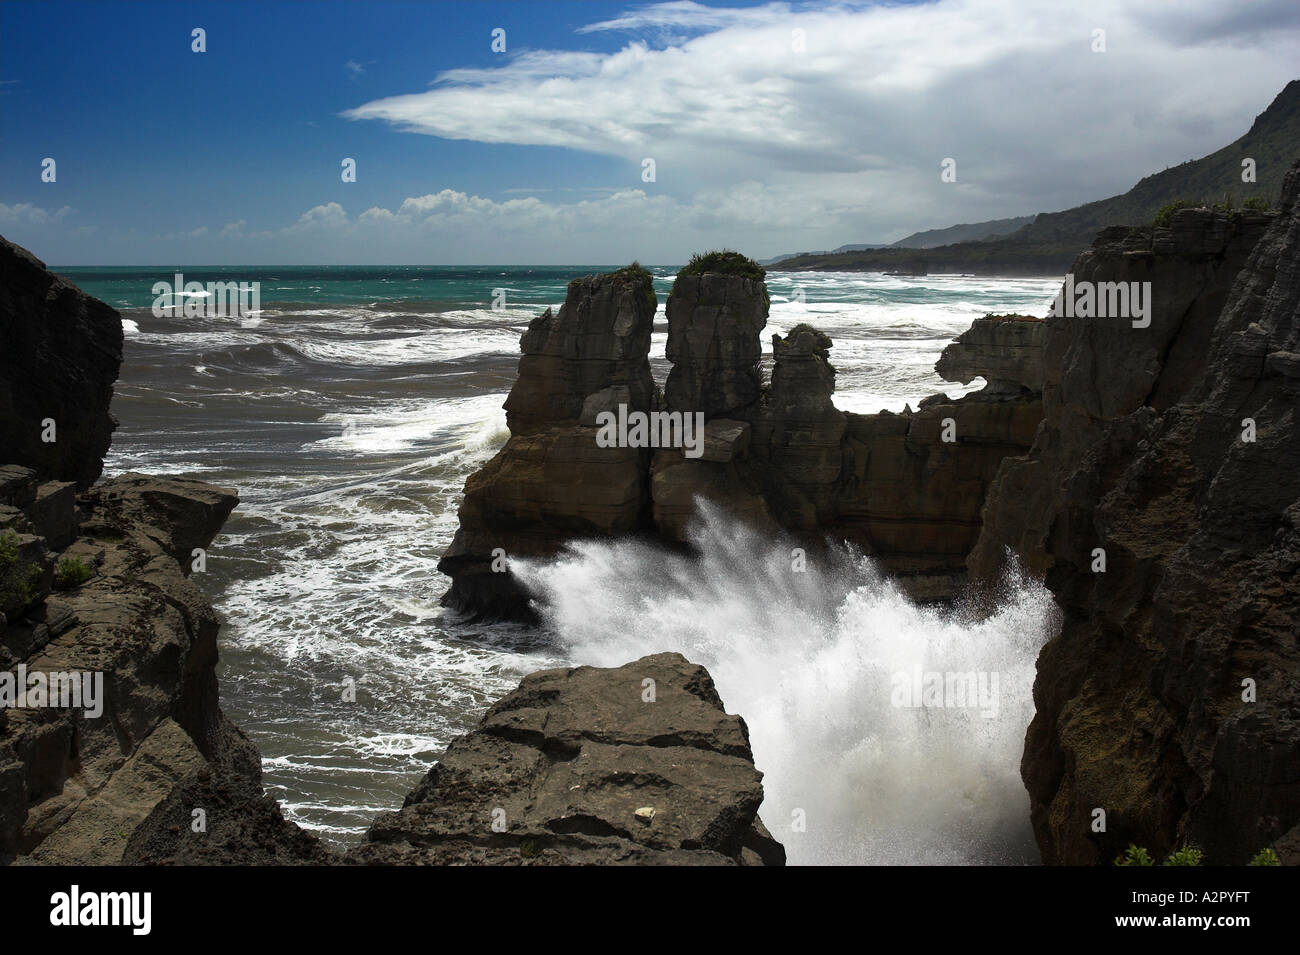 Vista del paesaggio di pancake formazione rocciosa sulla costa occidentale dell'Isola Sud della Nuova Zelanda con onde che si infrangono contro le rocce. Foto Stock